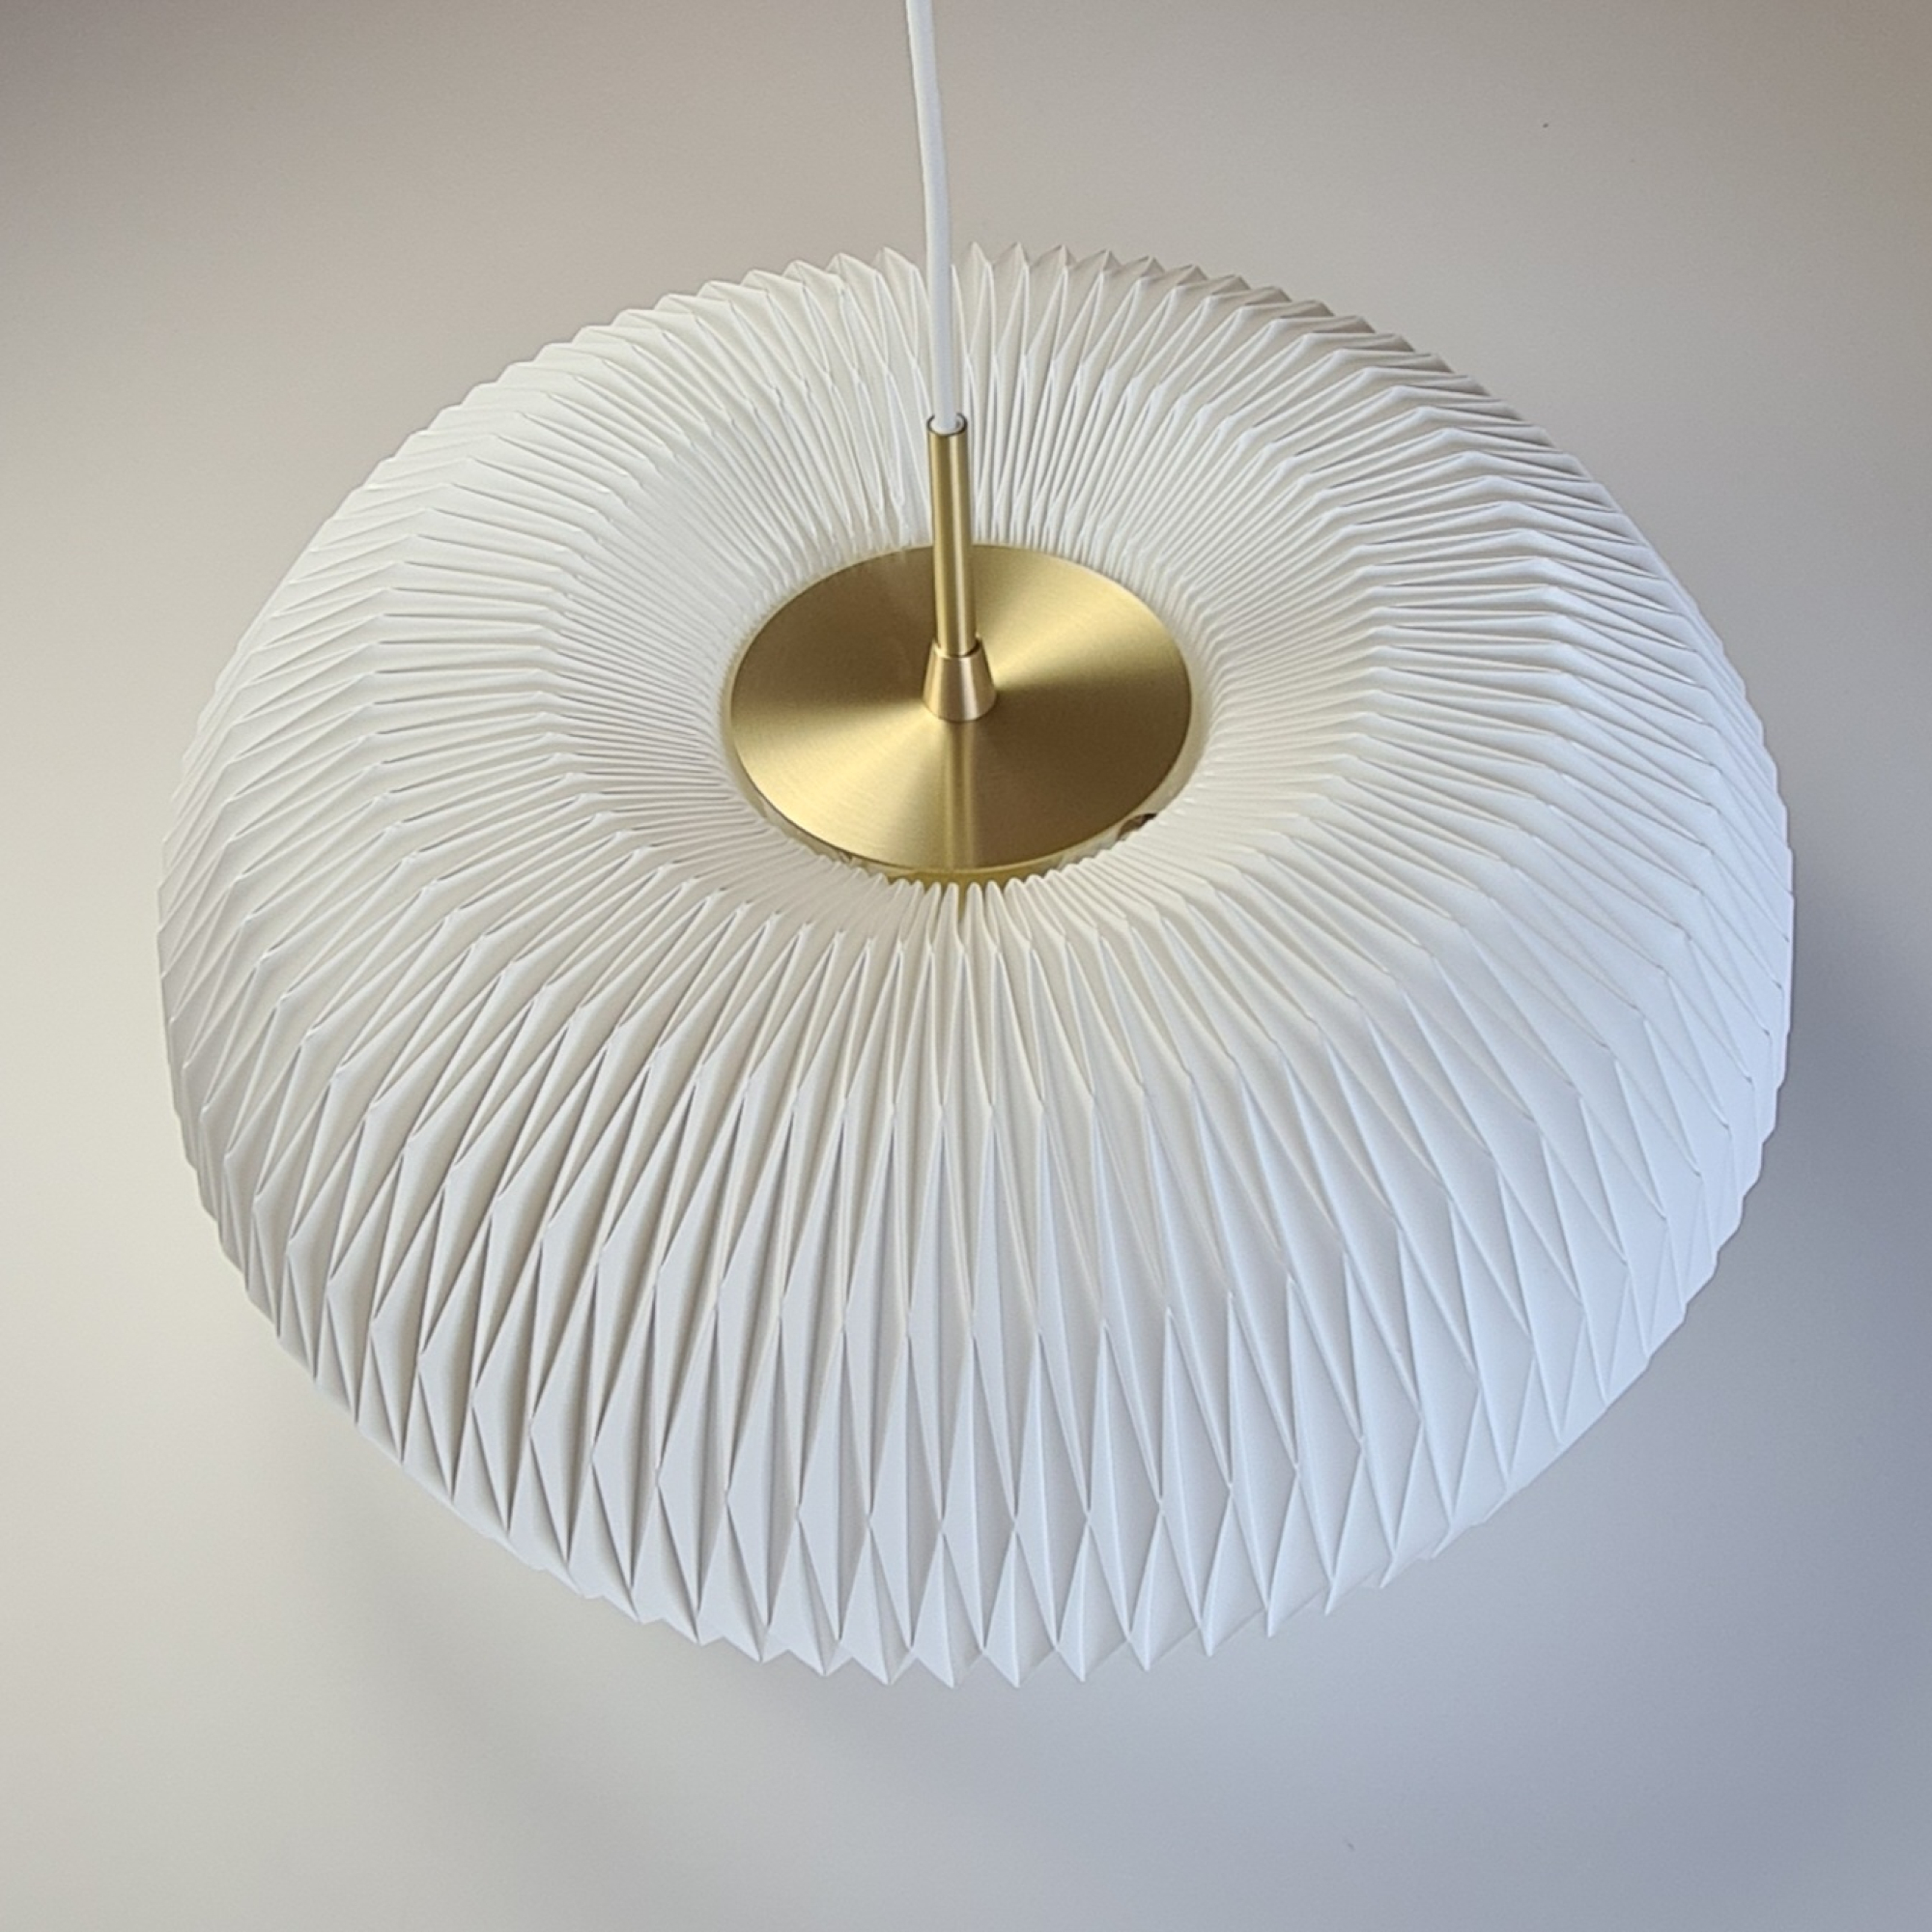 De lamp is algemeen bekend als ‘DONUT’. De ontwerpster Lise Navne liet zich inspireren 